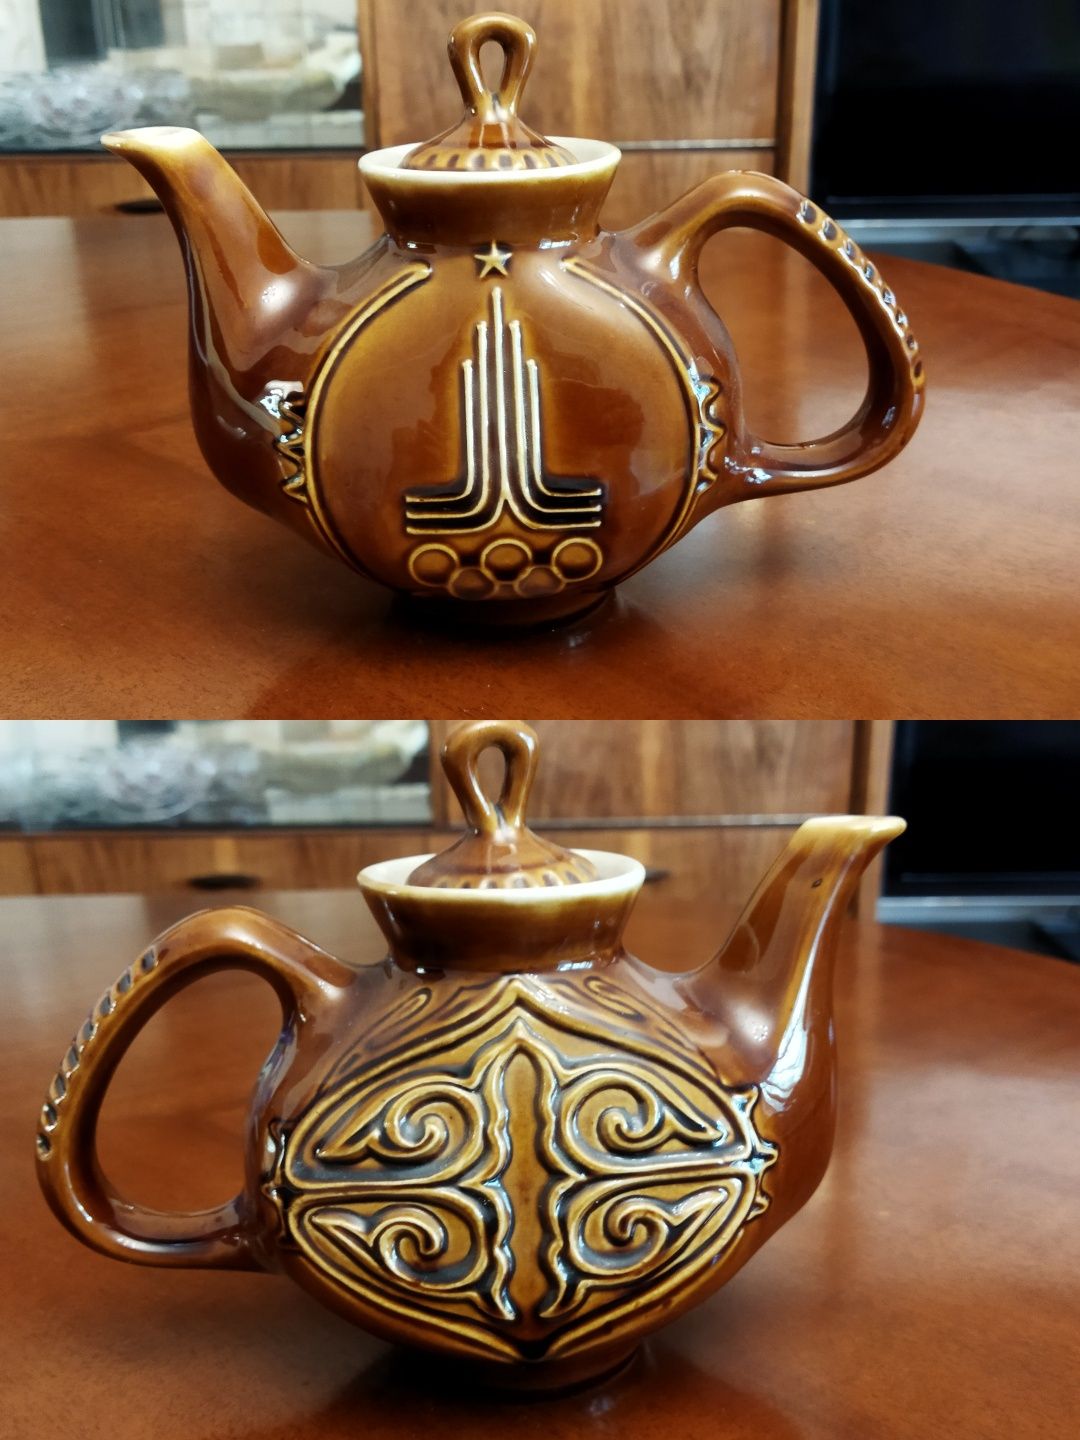 Продаю сувенирный чайник из керамики посвящённый олимпиаде 1980г